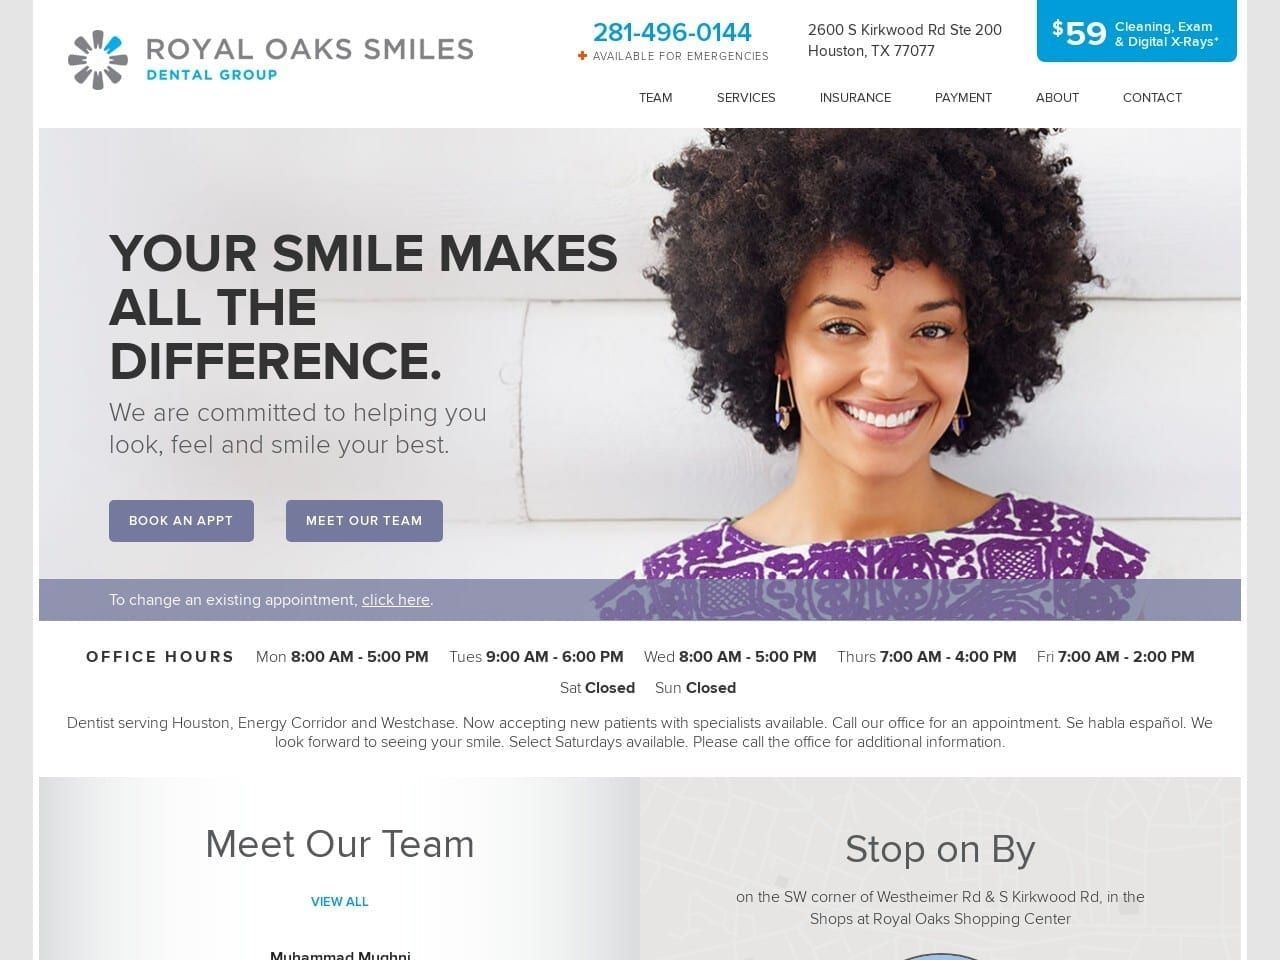 Royal Oaks Smiles Dental Group Website Screenshot from royaloakssmilesdentalgroup.com